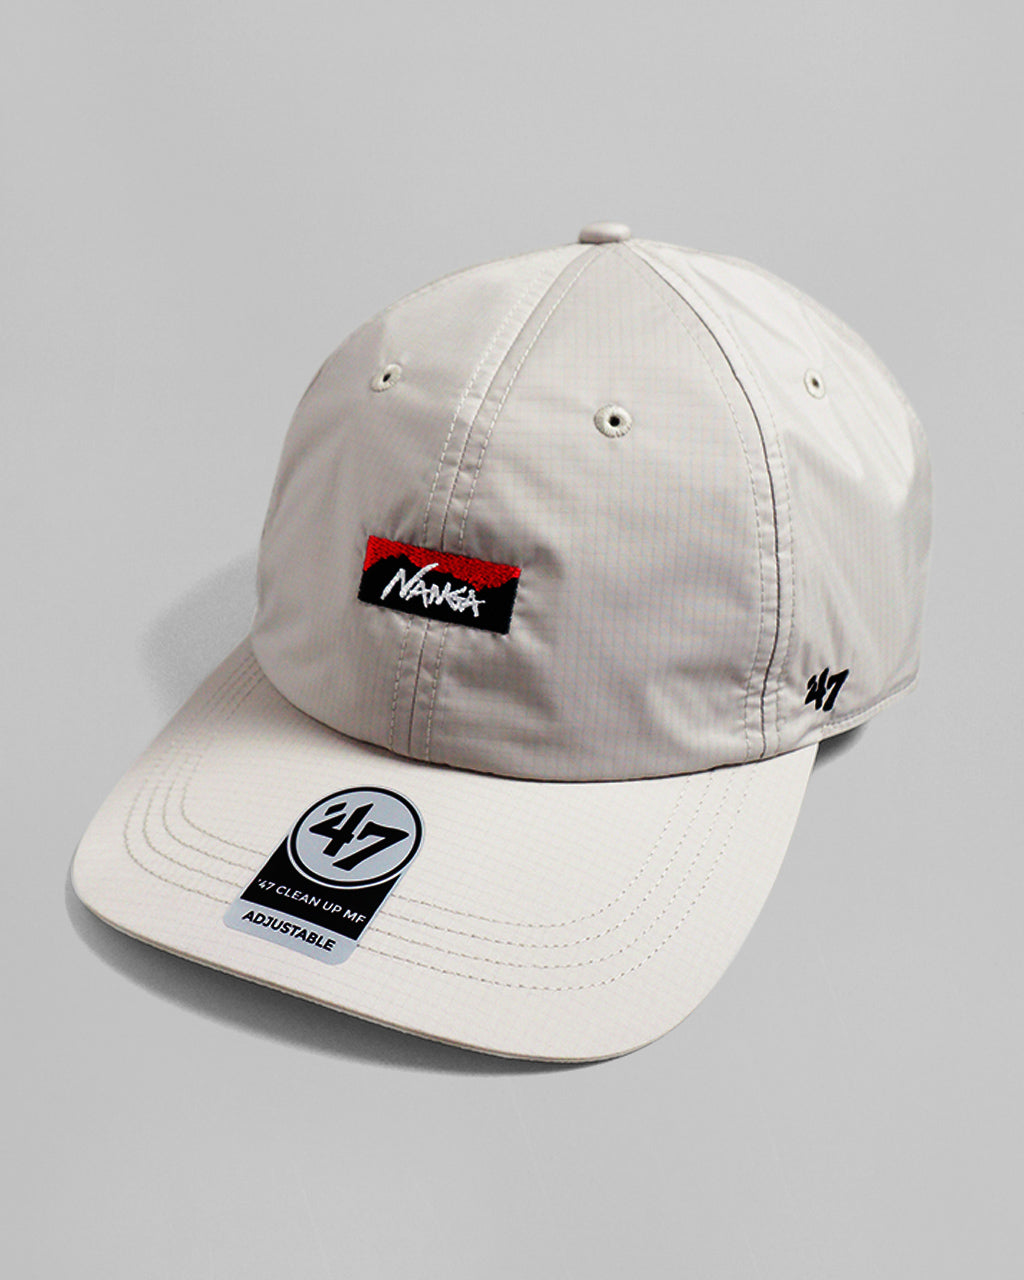 NANGA × '47 ナンガ フォーティーセブン オーロラ テックス キャップ AURORA TEX CAP 帽子   NS2411-3B019-A